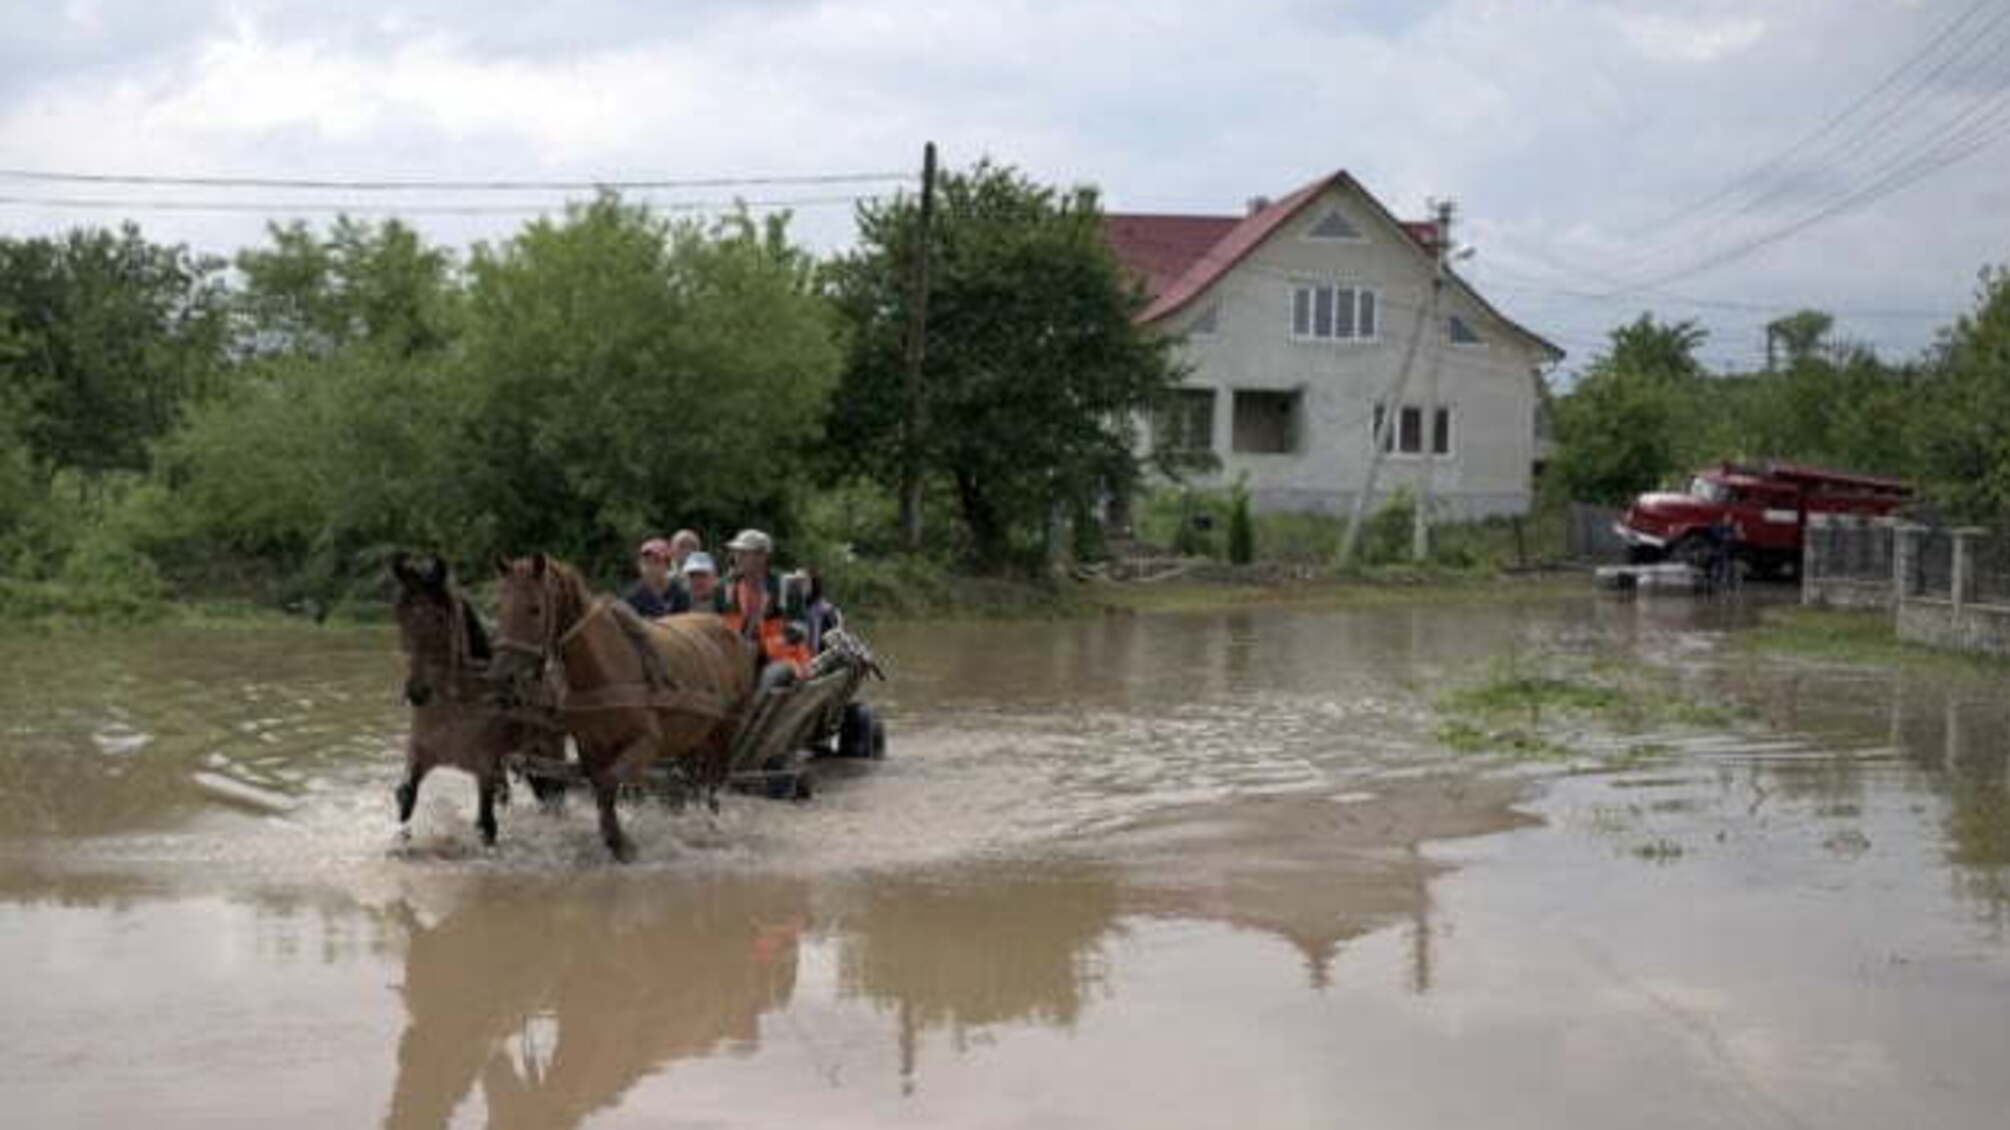 Італія направила в Україну гумдопомогу постраждалим від повеней